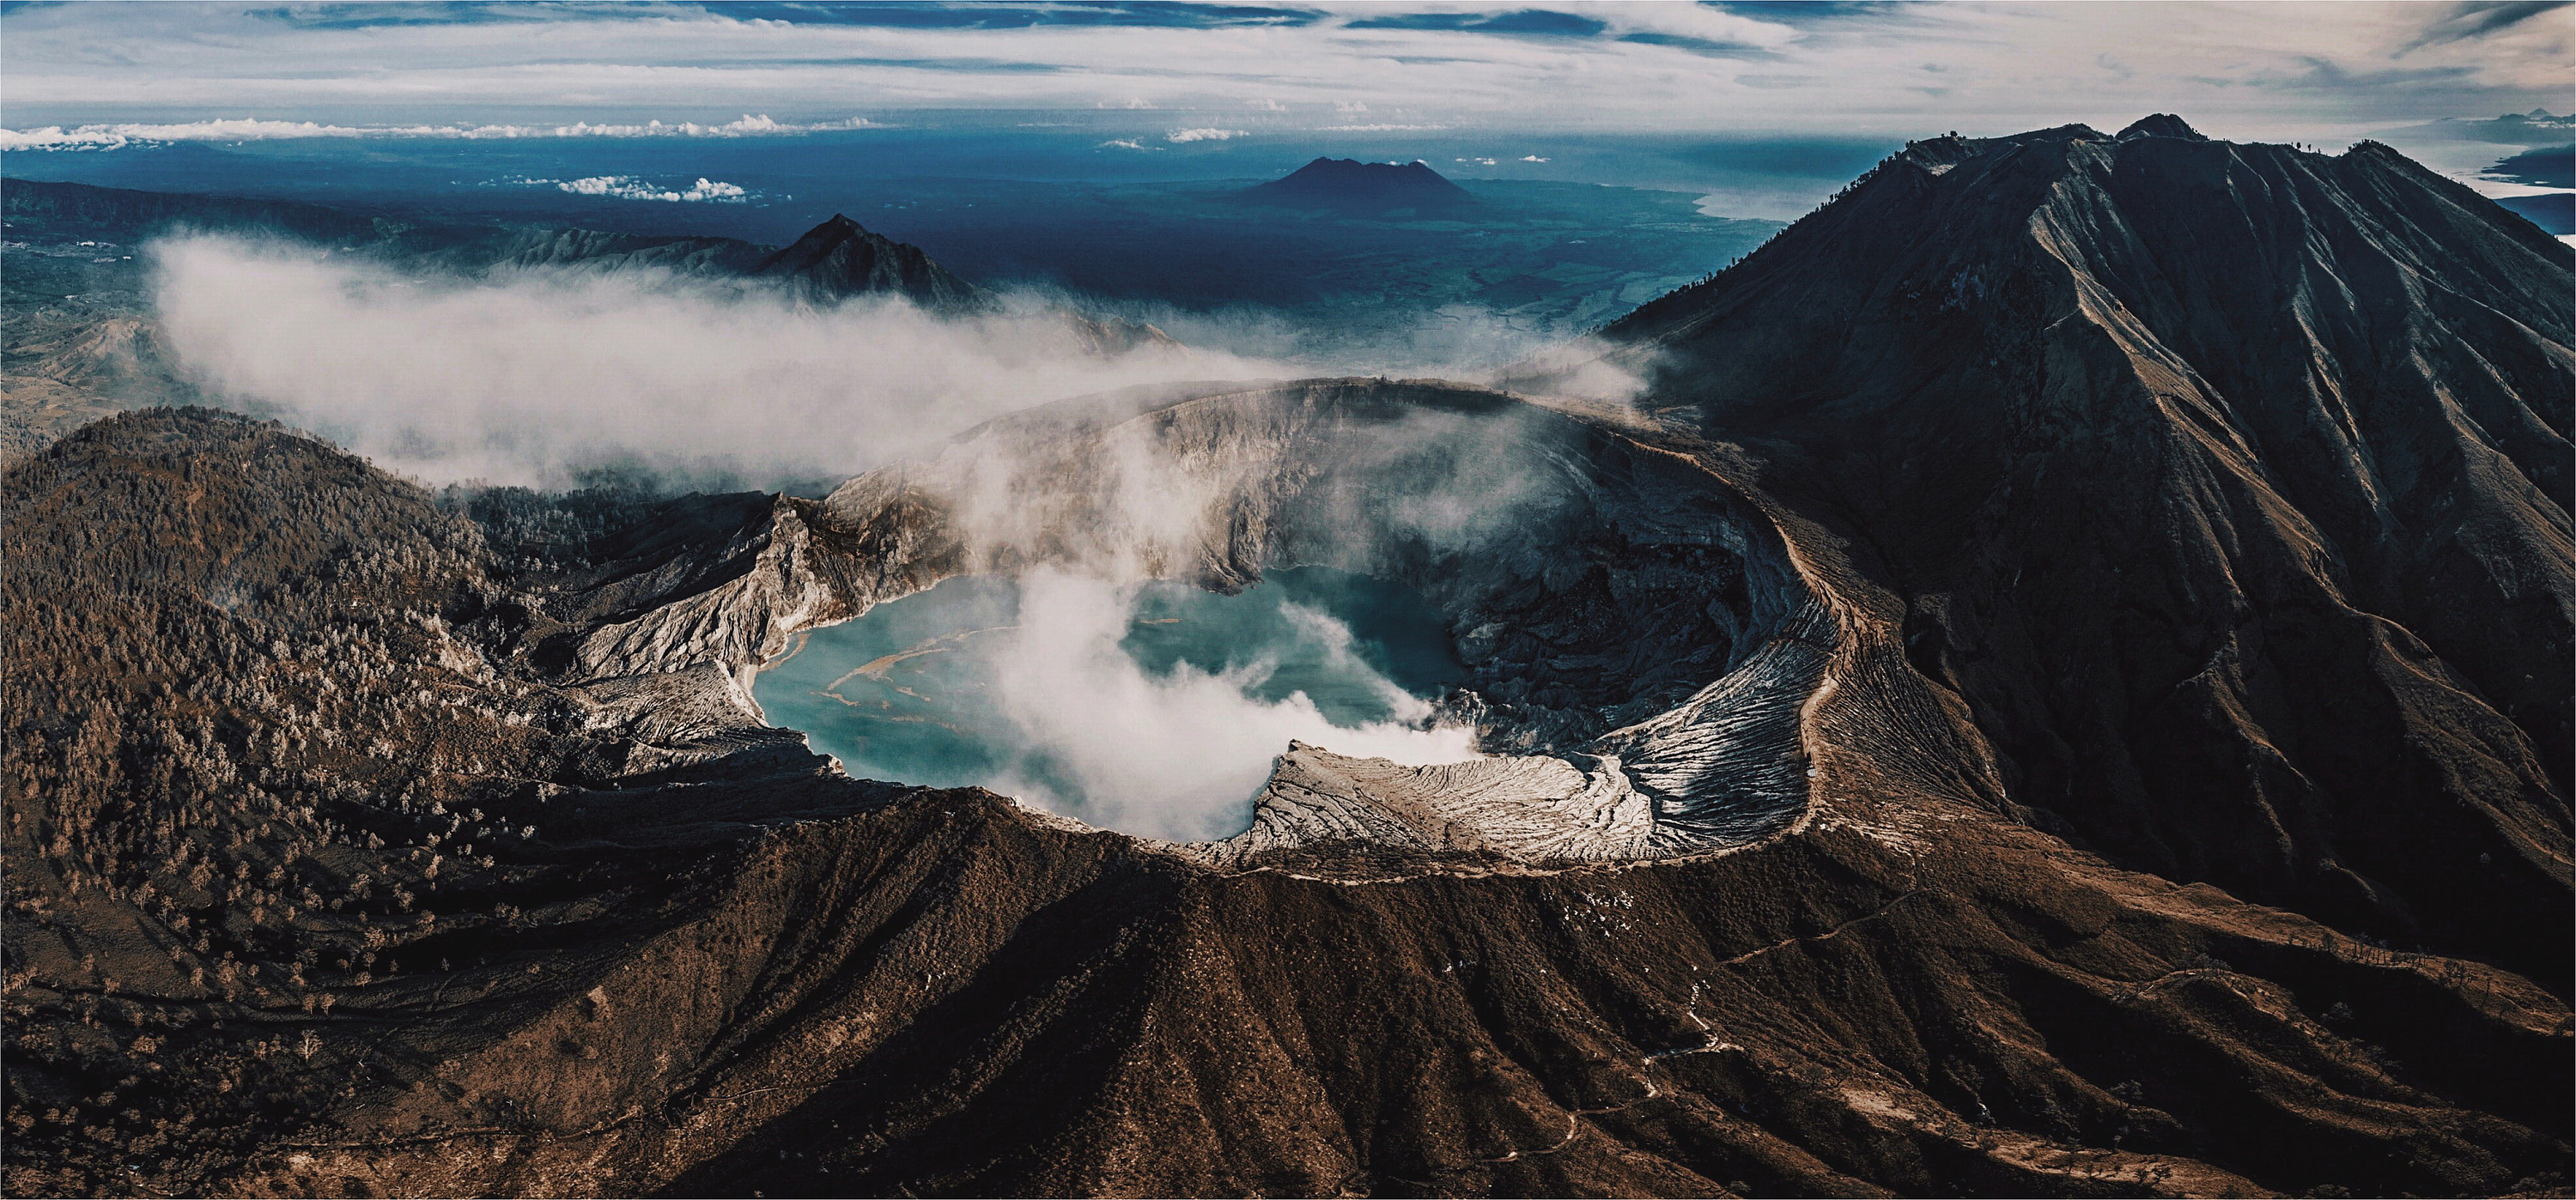 印尼喀拉喀托火山图片